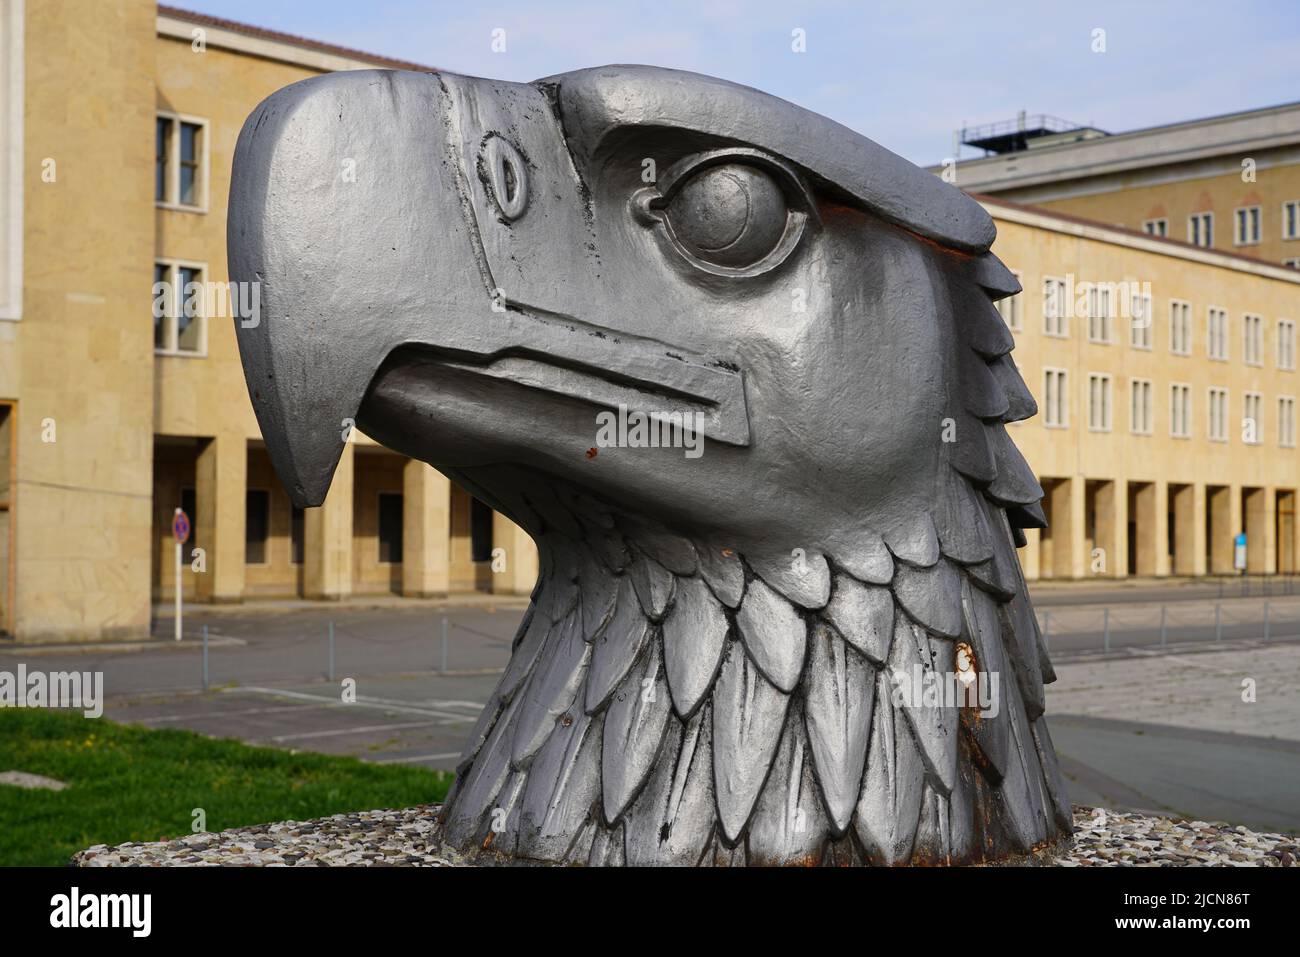 Di fronte all'ex edificio del terminal dell'aeroporto di Tempelhof si trova la Eagle Square, una scultura con testa di aquila alta 4,50 metri. Berlino, Germania, 1.5.22 Foto Stock